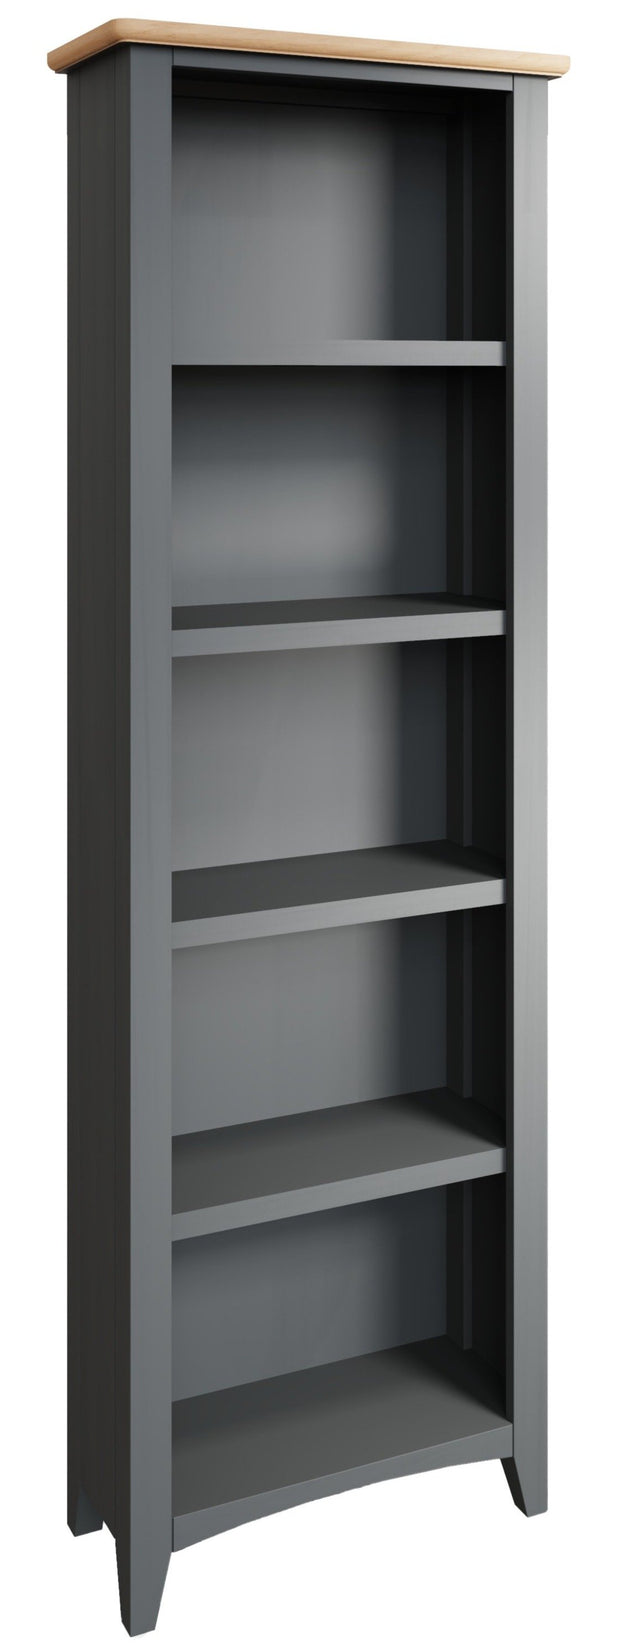 Ludlow Grey Large Bookcase